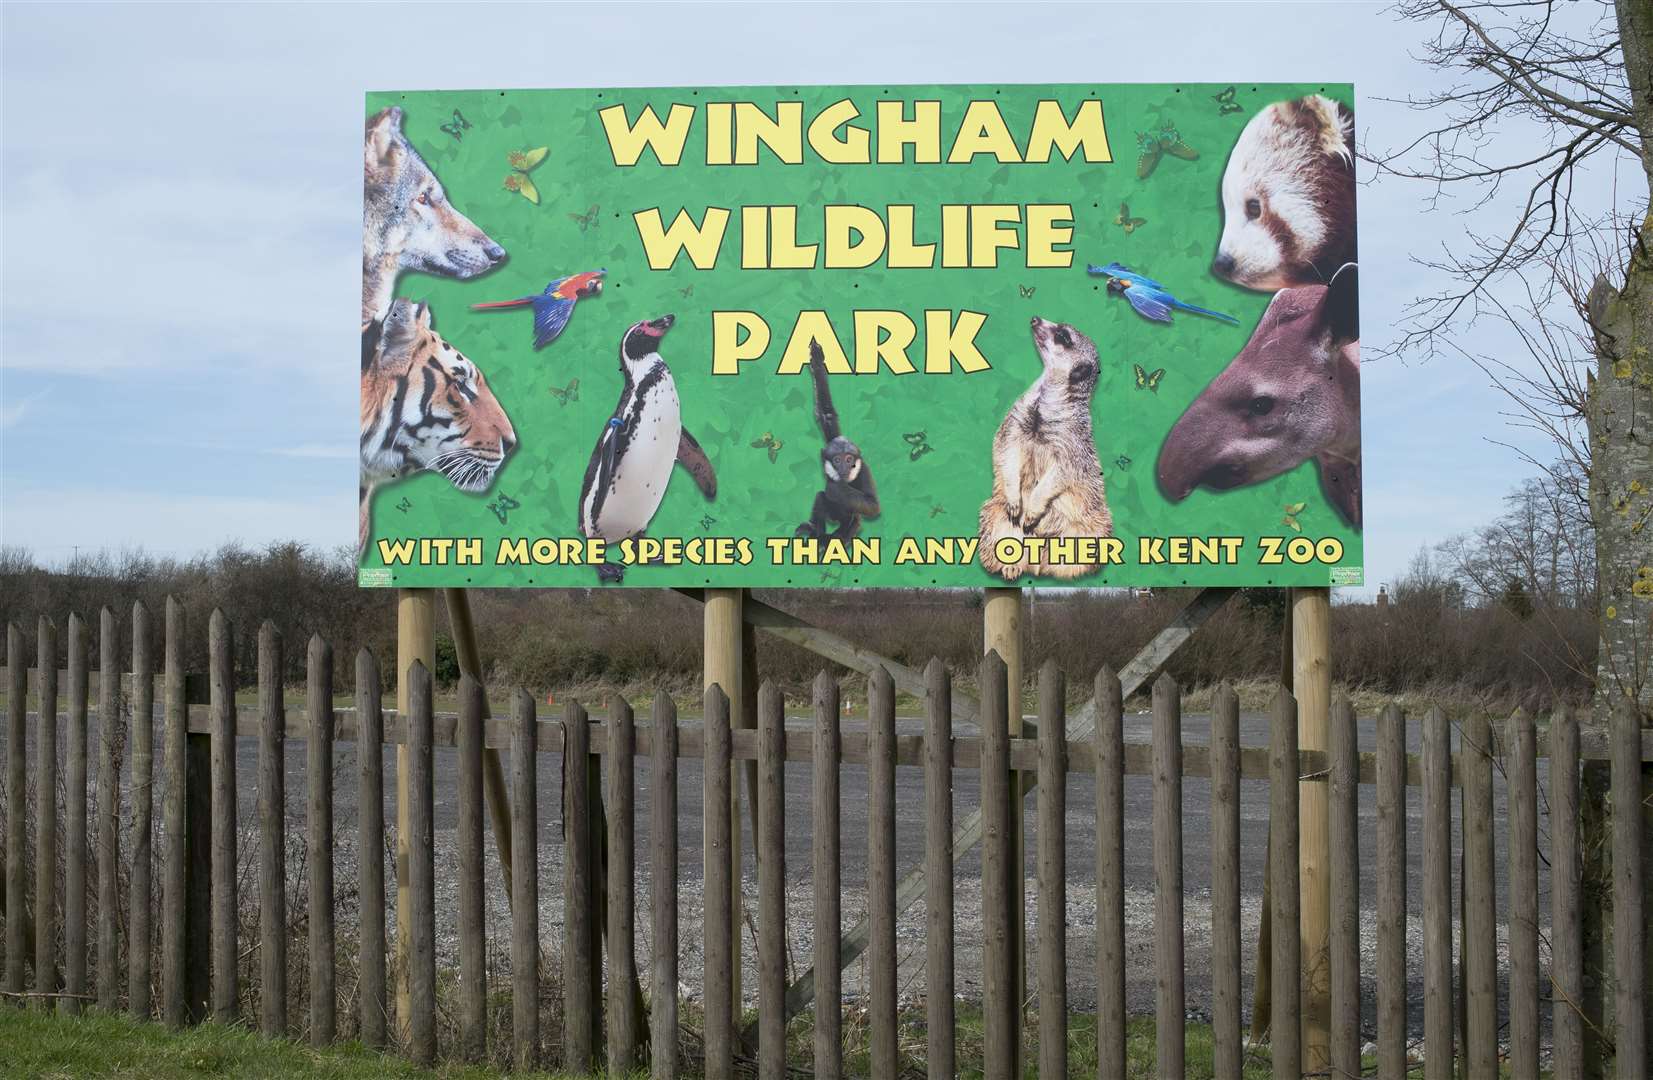 Wingham Wildlife Park seeks to re-open as soon as possible